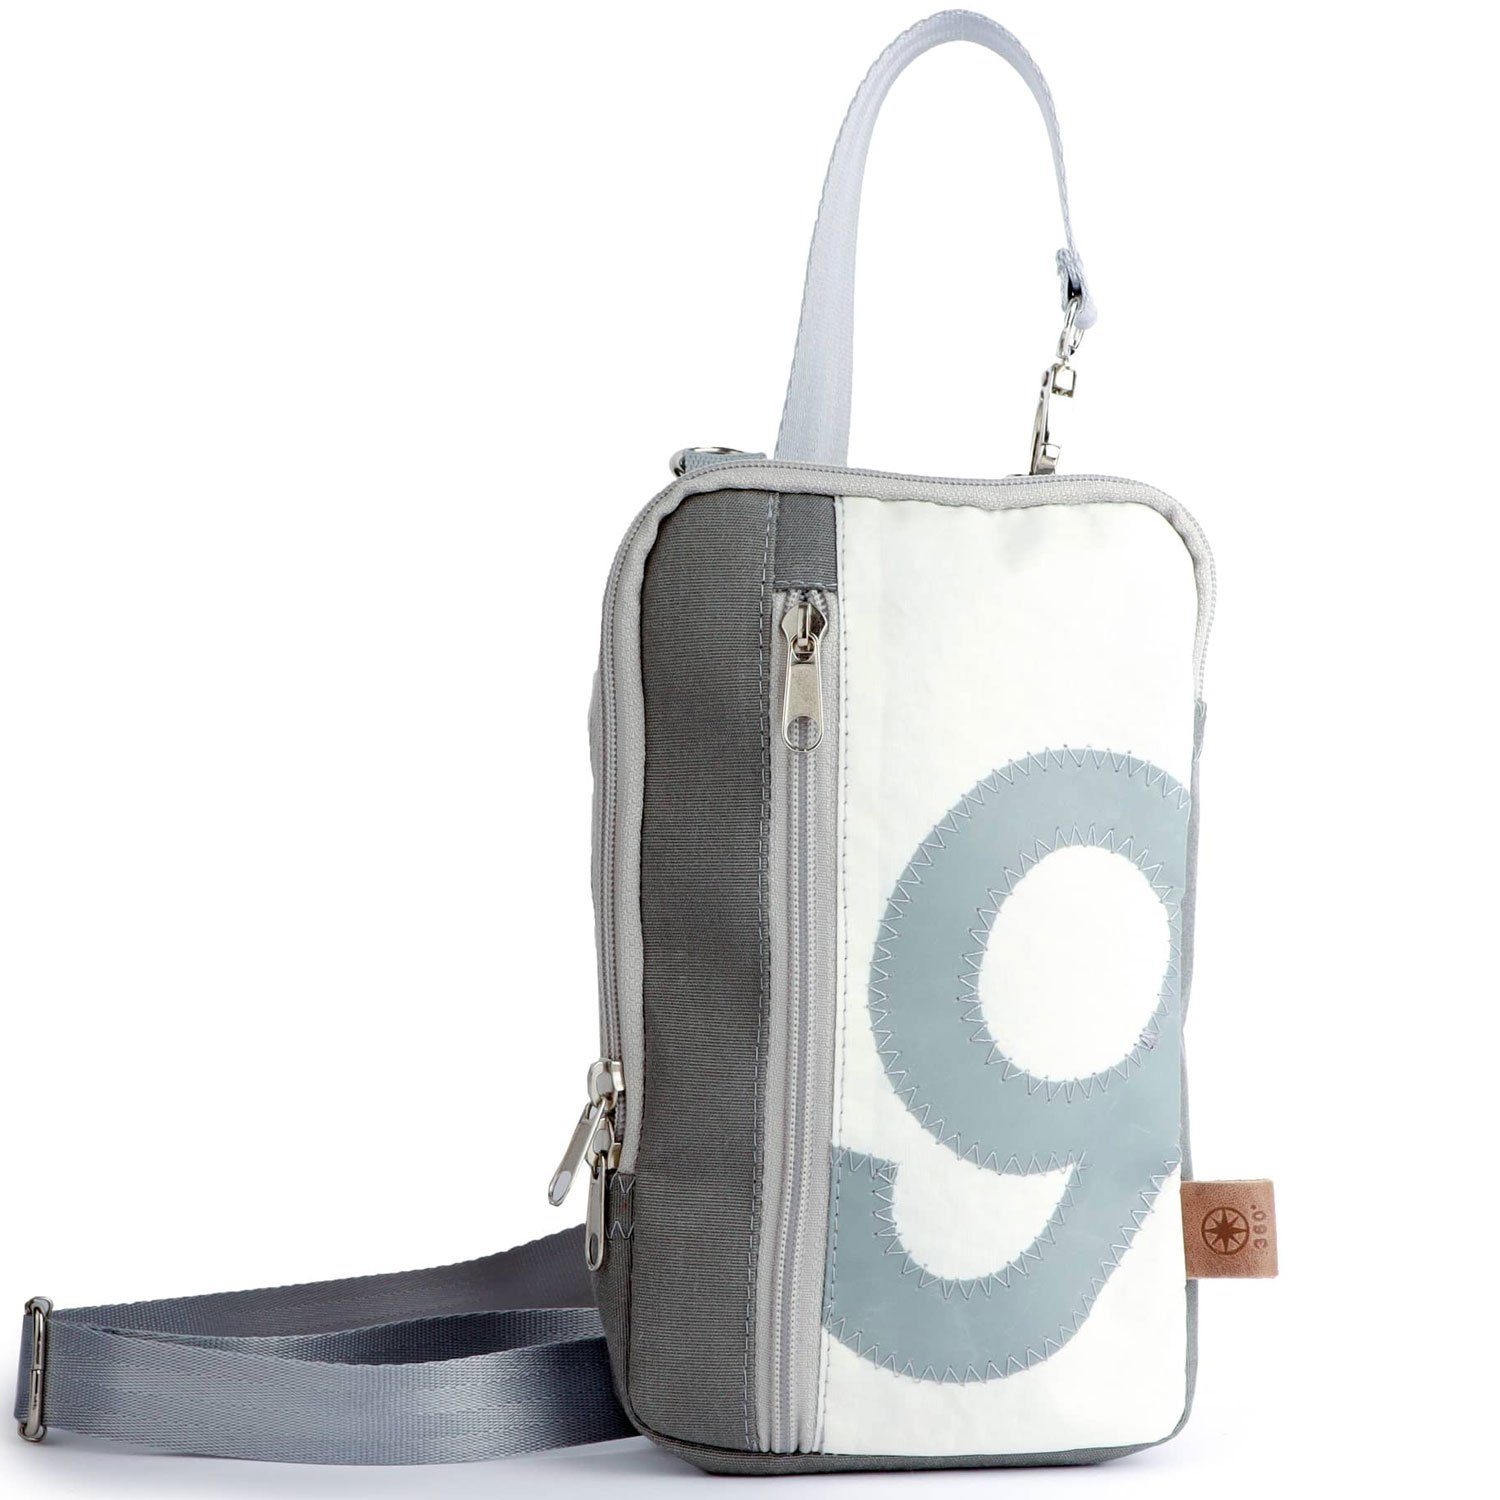 360Grad Handtasche »360 Grad Nautik kleine leichte Umhängetasche aus  Segeltuch weiß-grau« online kaufen | OTTO